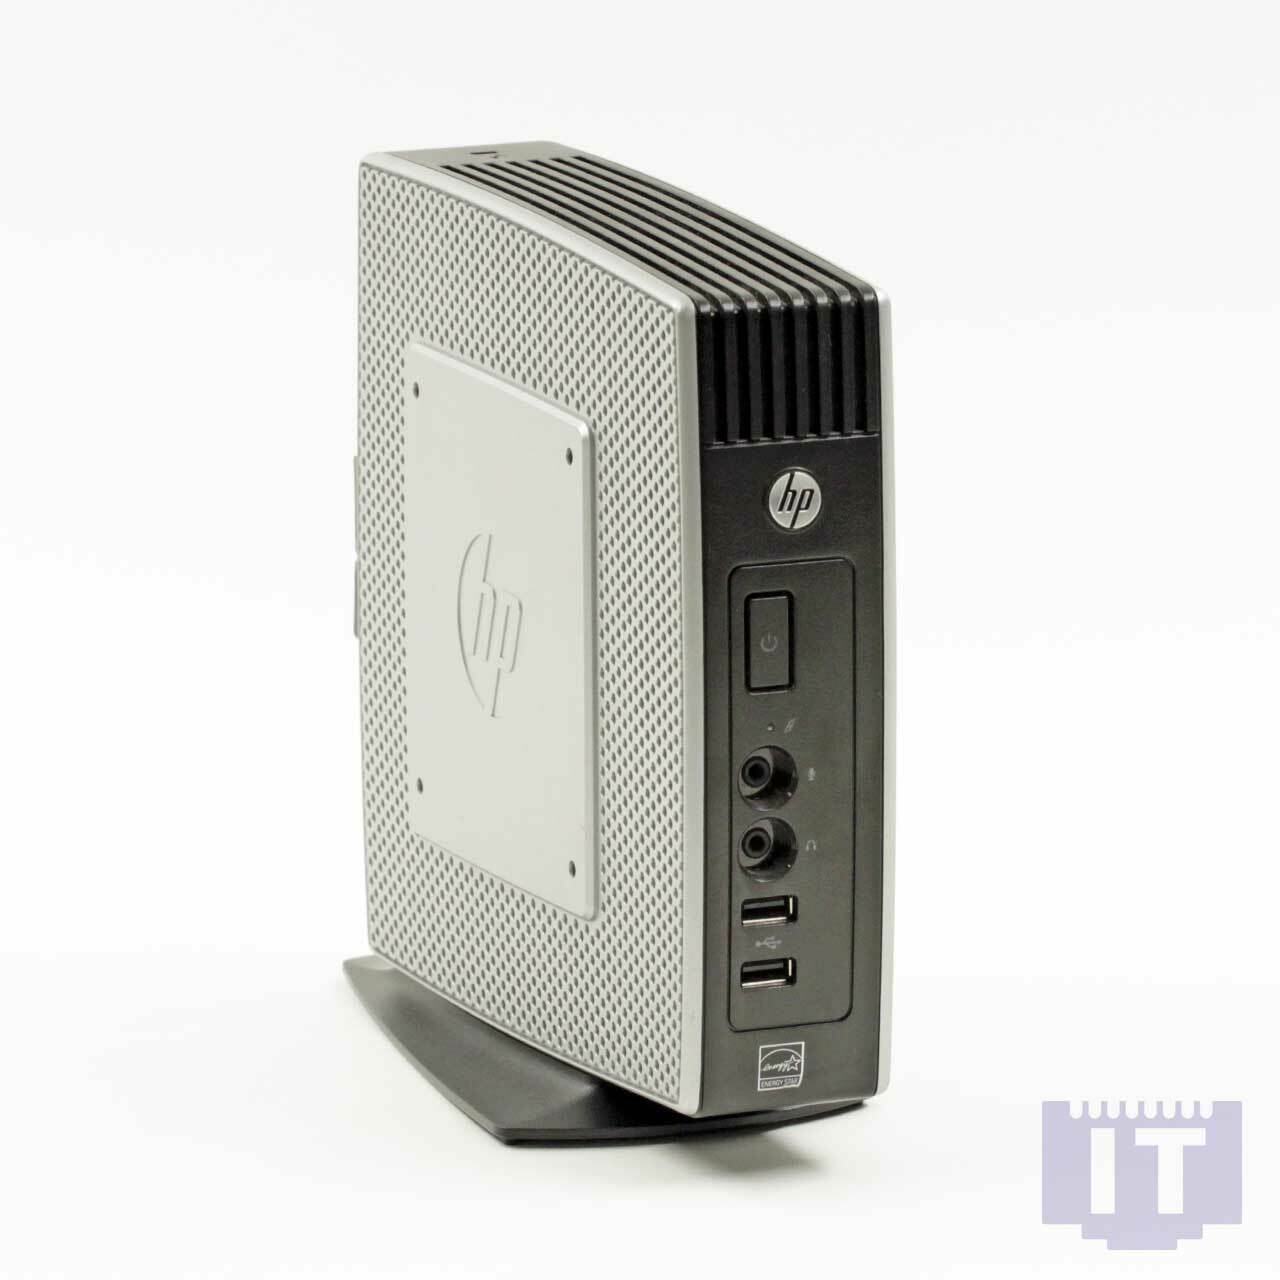 HP t5565 Thin Client Desktop-PC (via Nano U3500, 1 GHz, 1 GB RAM, 1 GB HDD, Chromotion HD, HP ThinPro)